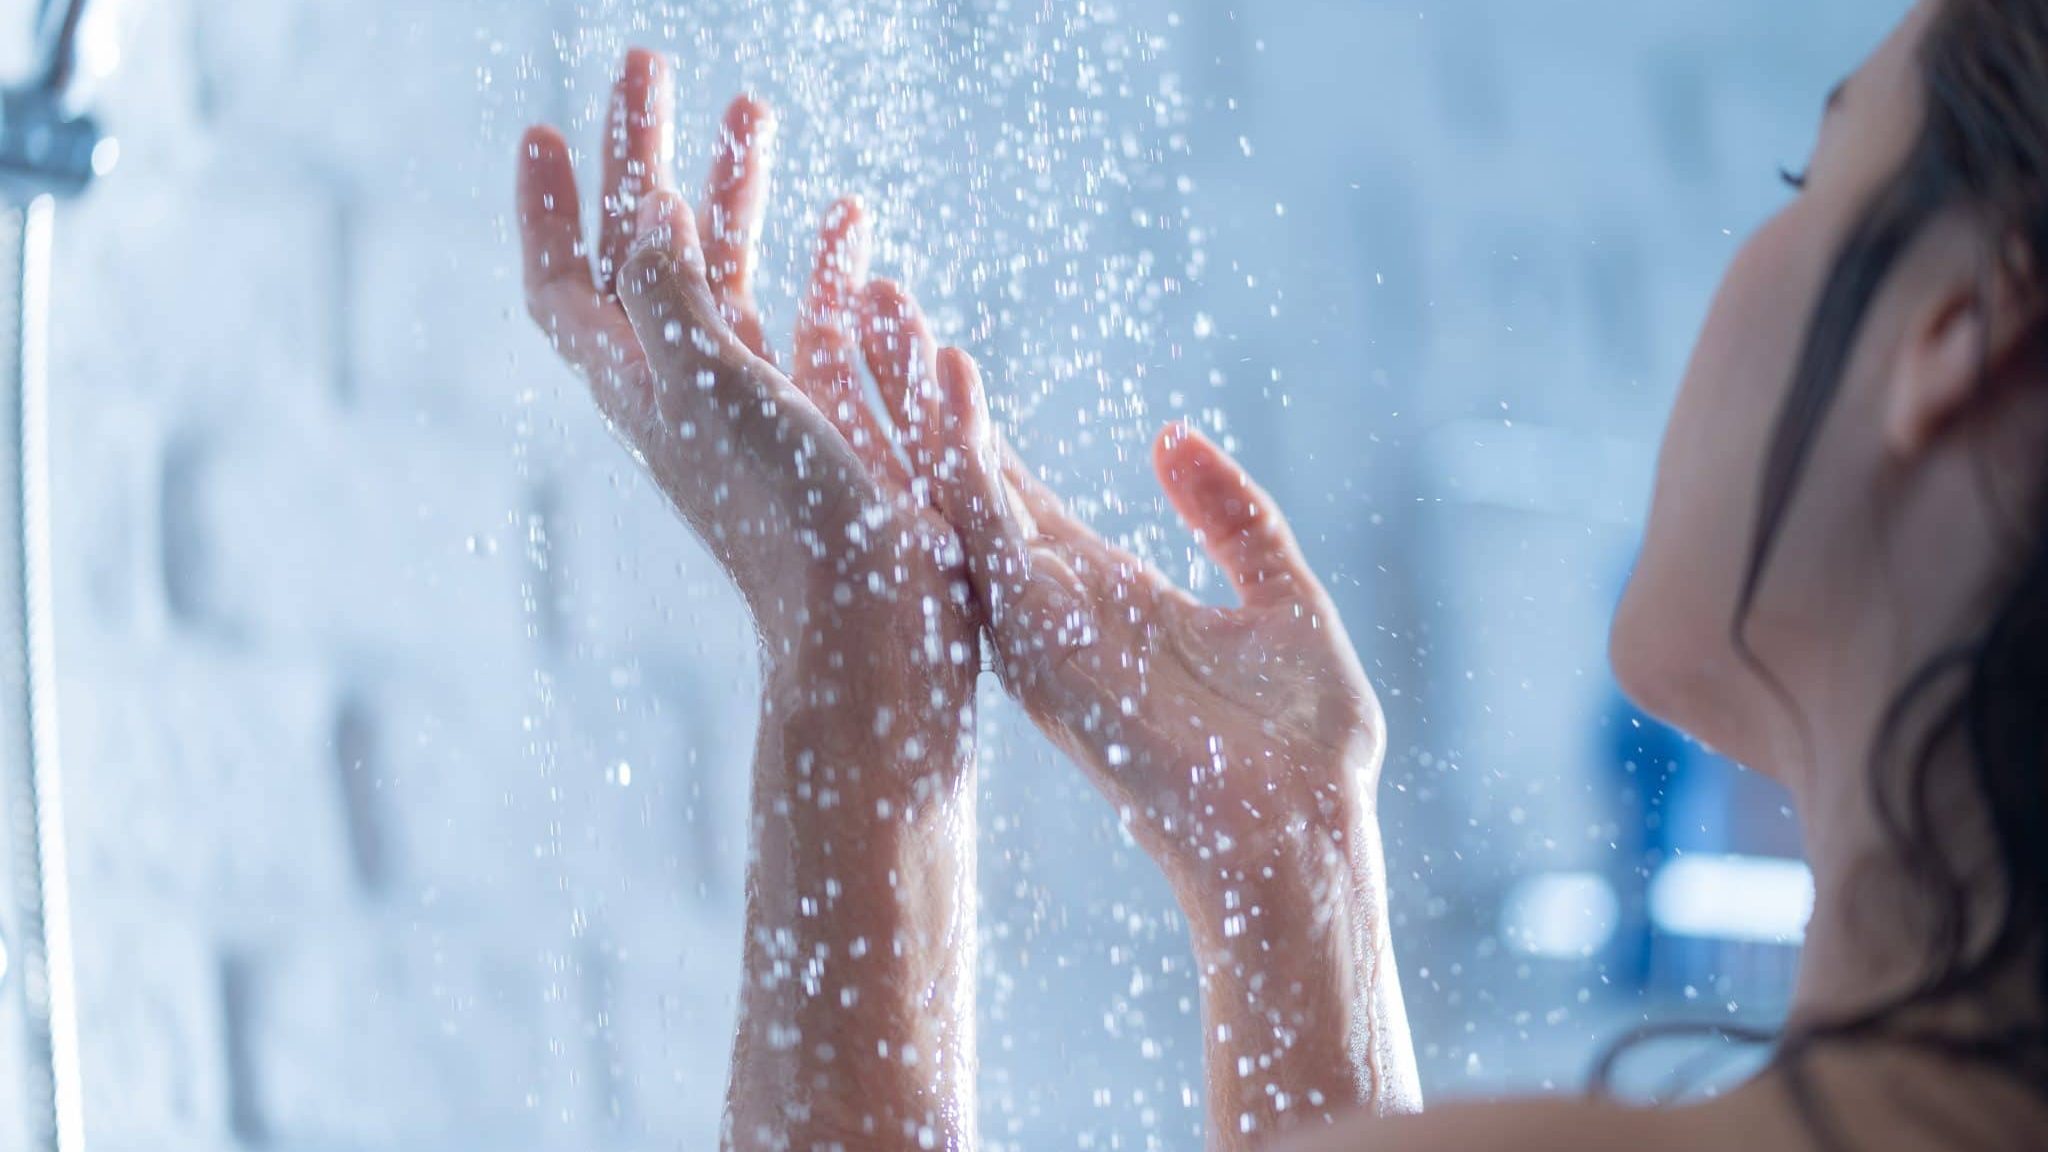 Ilya, des douches cycliques pour consommer moins d’eau